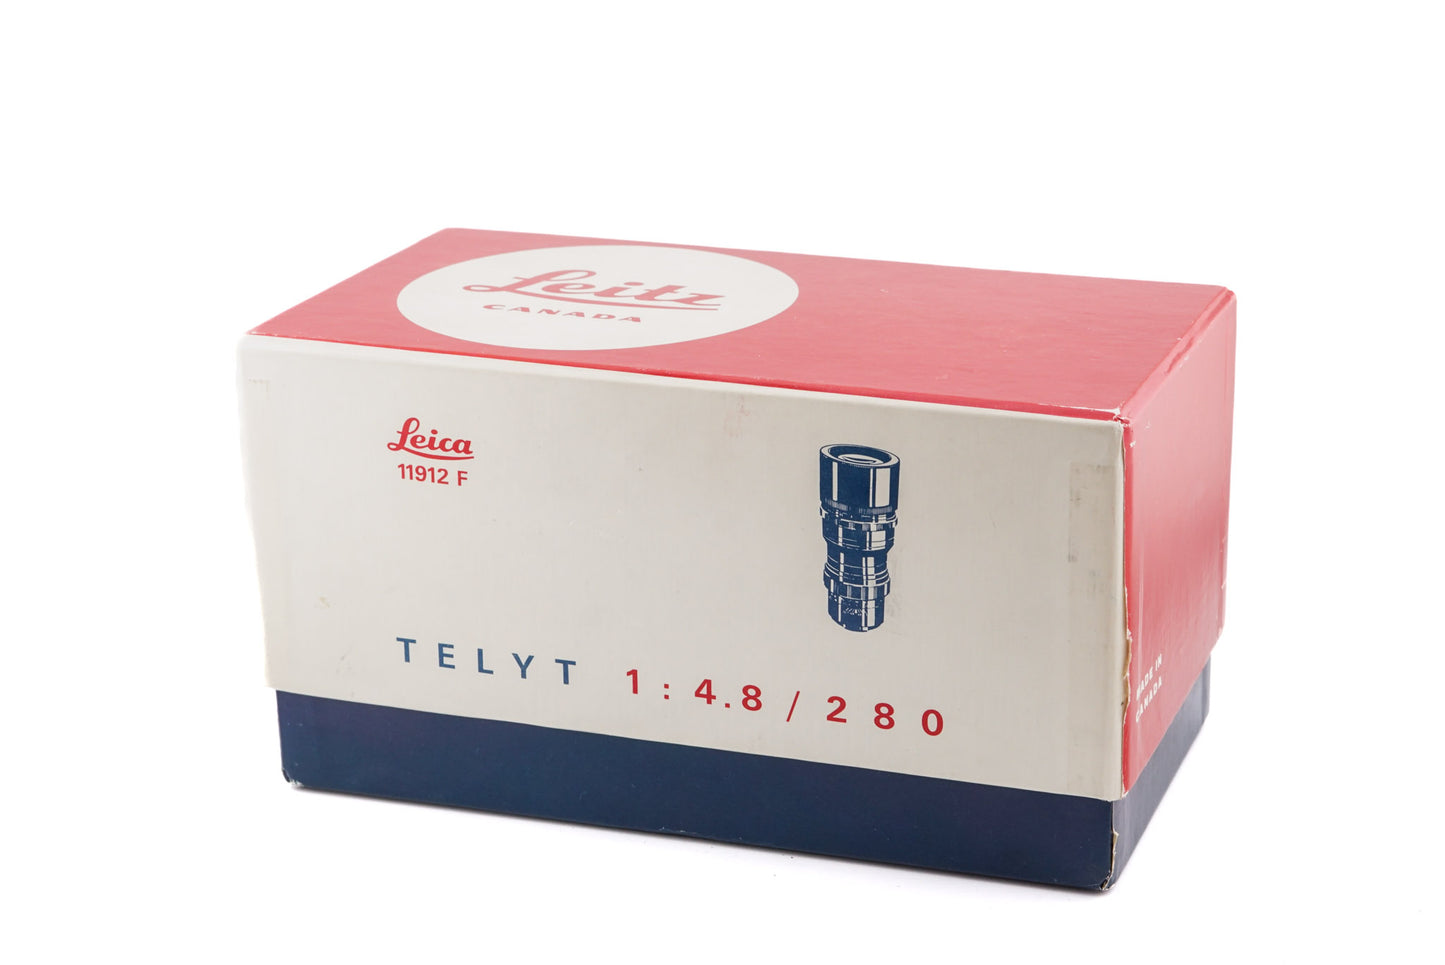 Leica 280mm f4.8 Telyt II (11912)